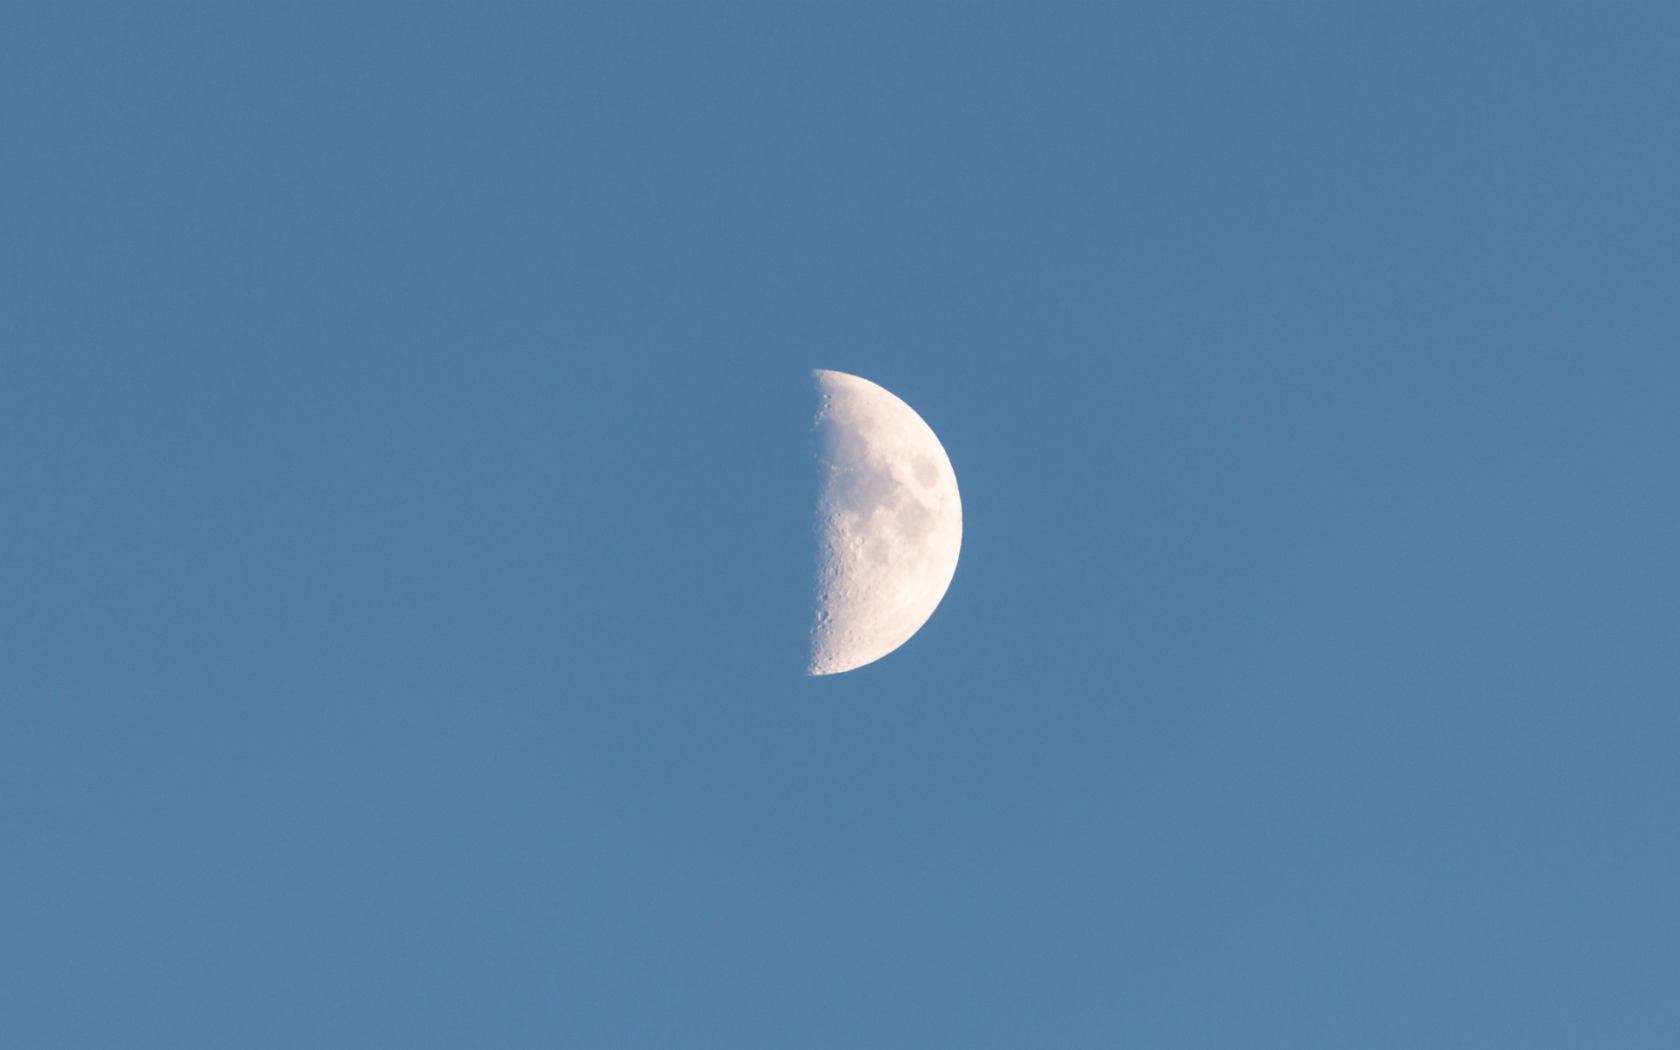 луна, месяц, небо, спутник